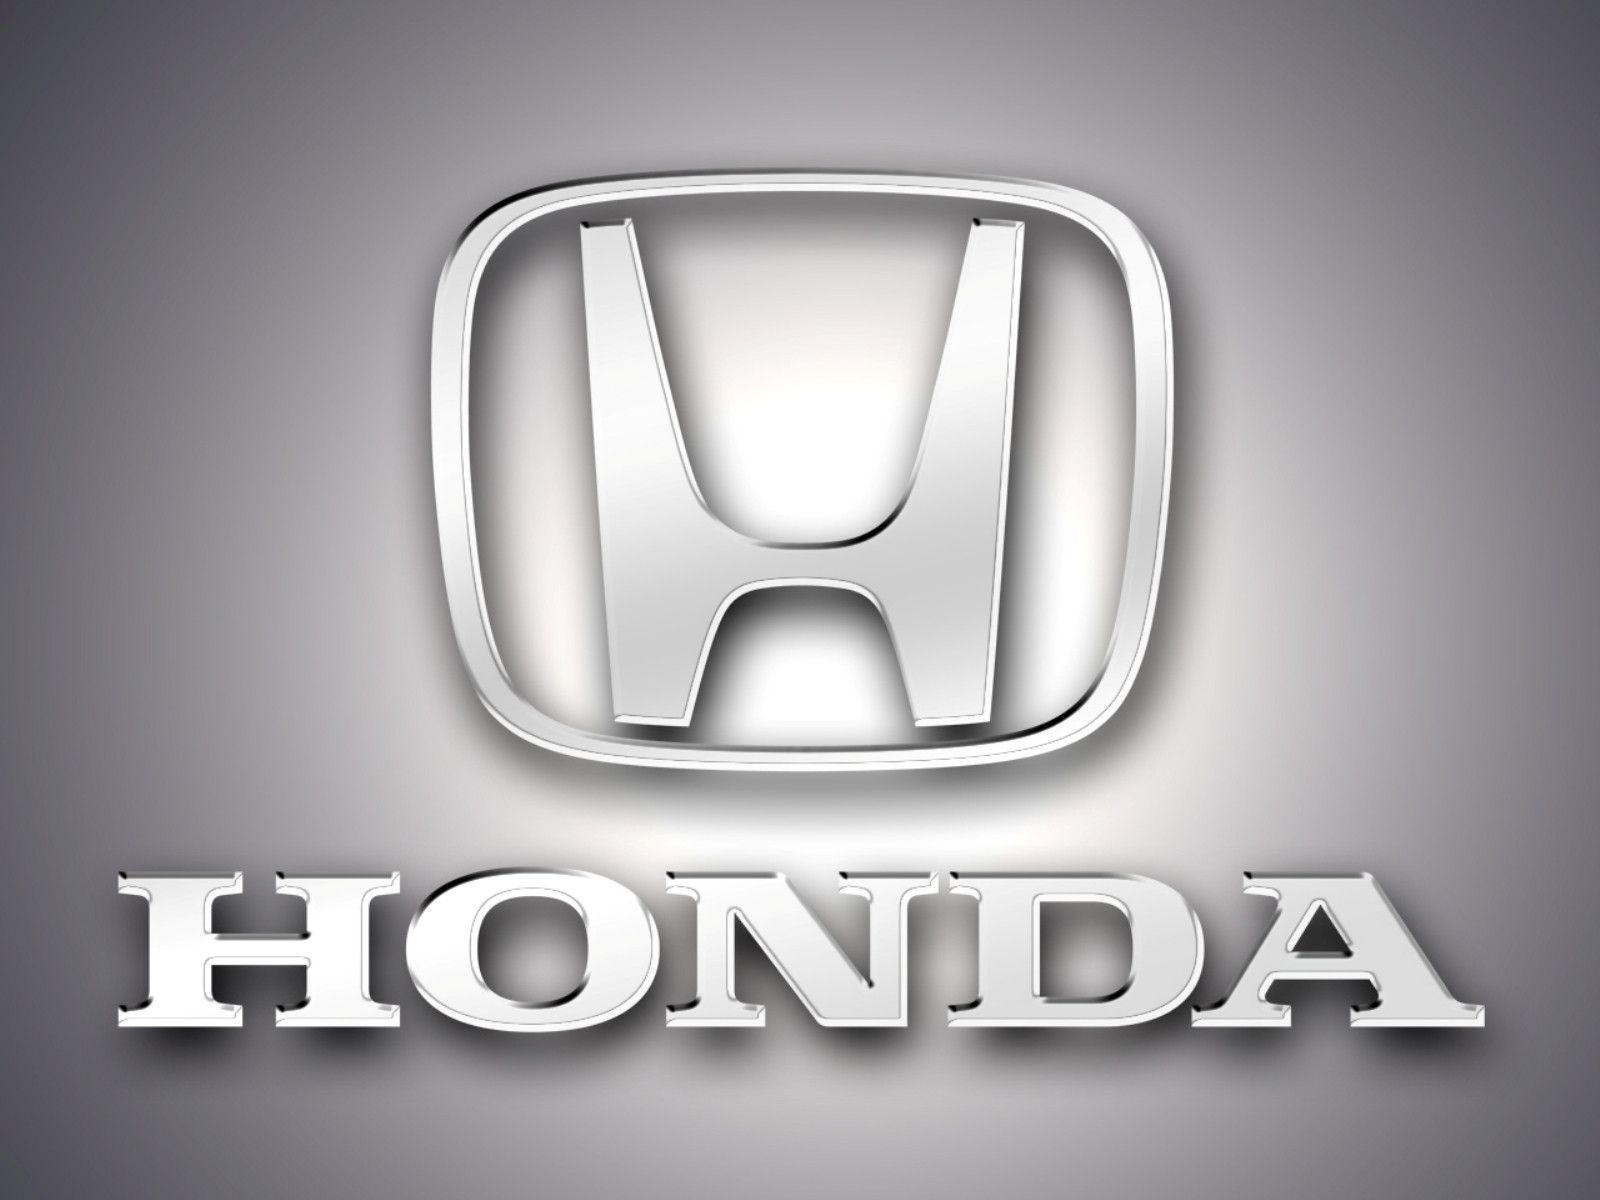 Что значит honda. Хонда лого. Khoncha logo. Honda логотип. [FYENF лого.